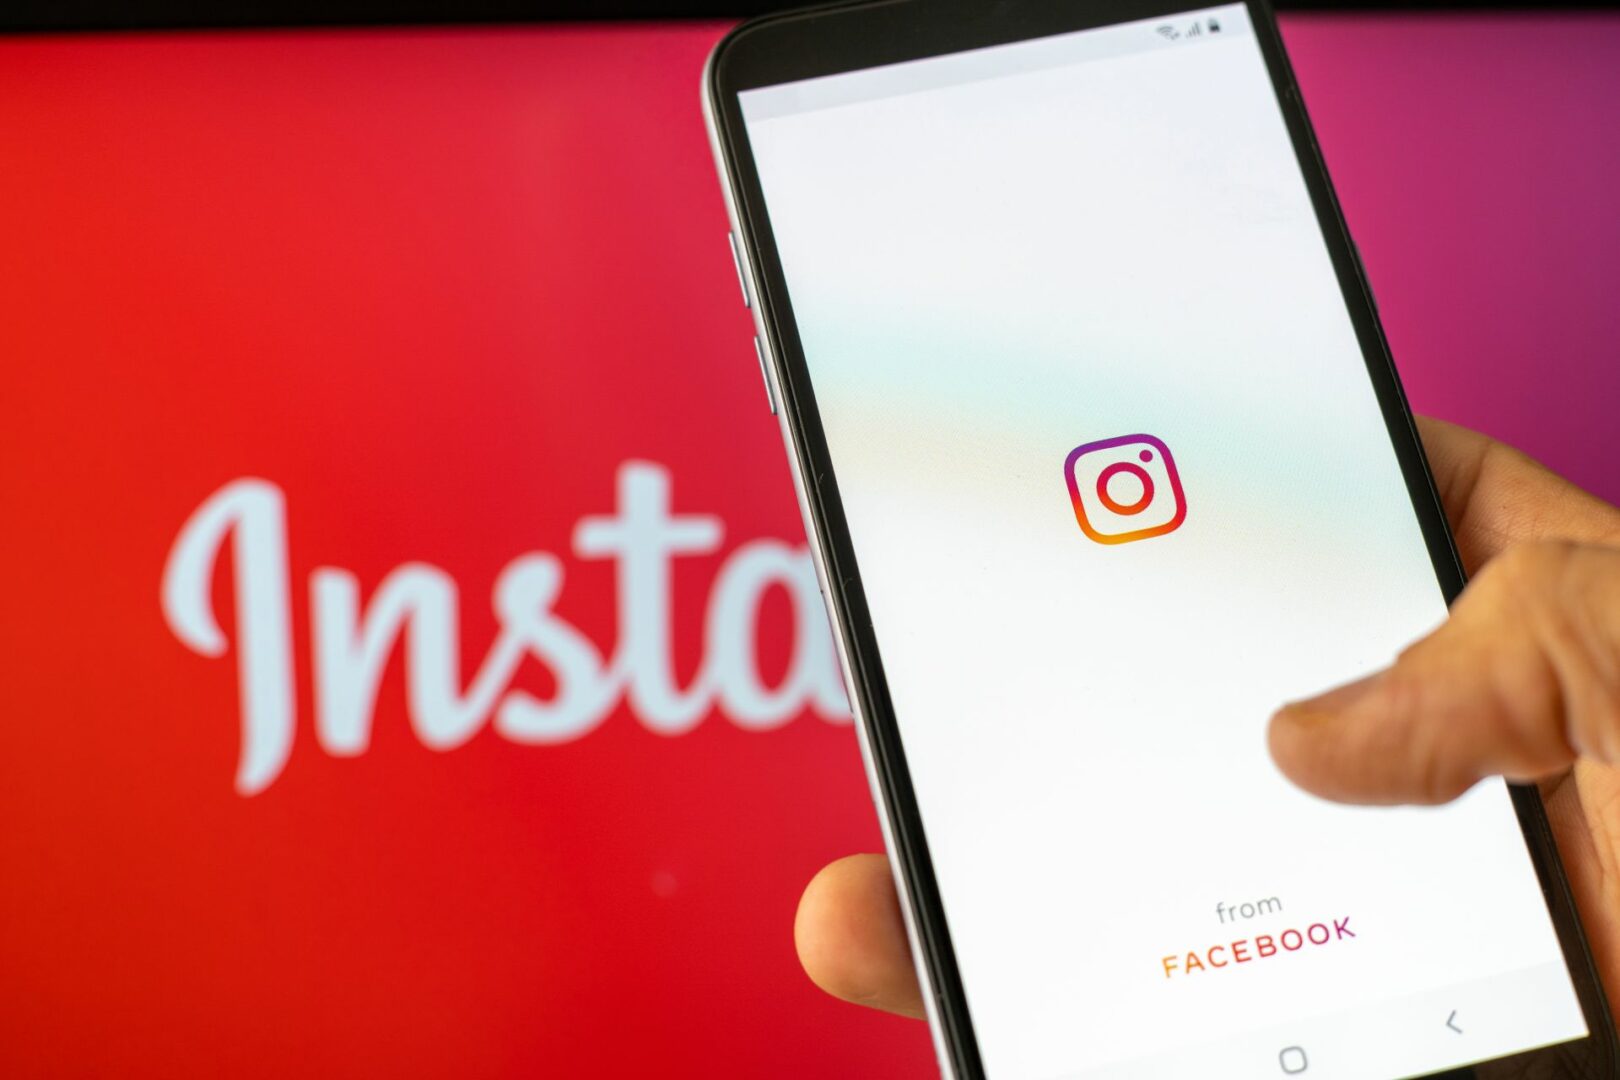 Noutatea din Instagram care îi face pe utilizatori să vrea să părăsească platforma definitiv